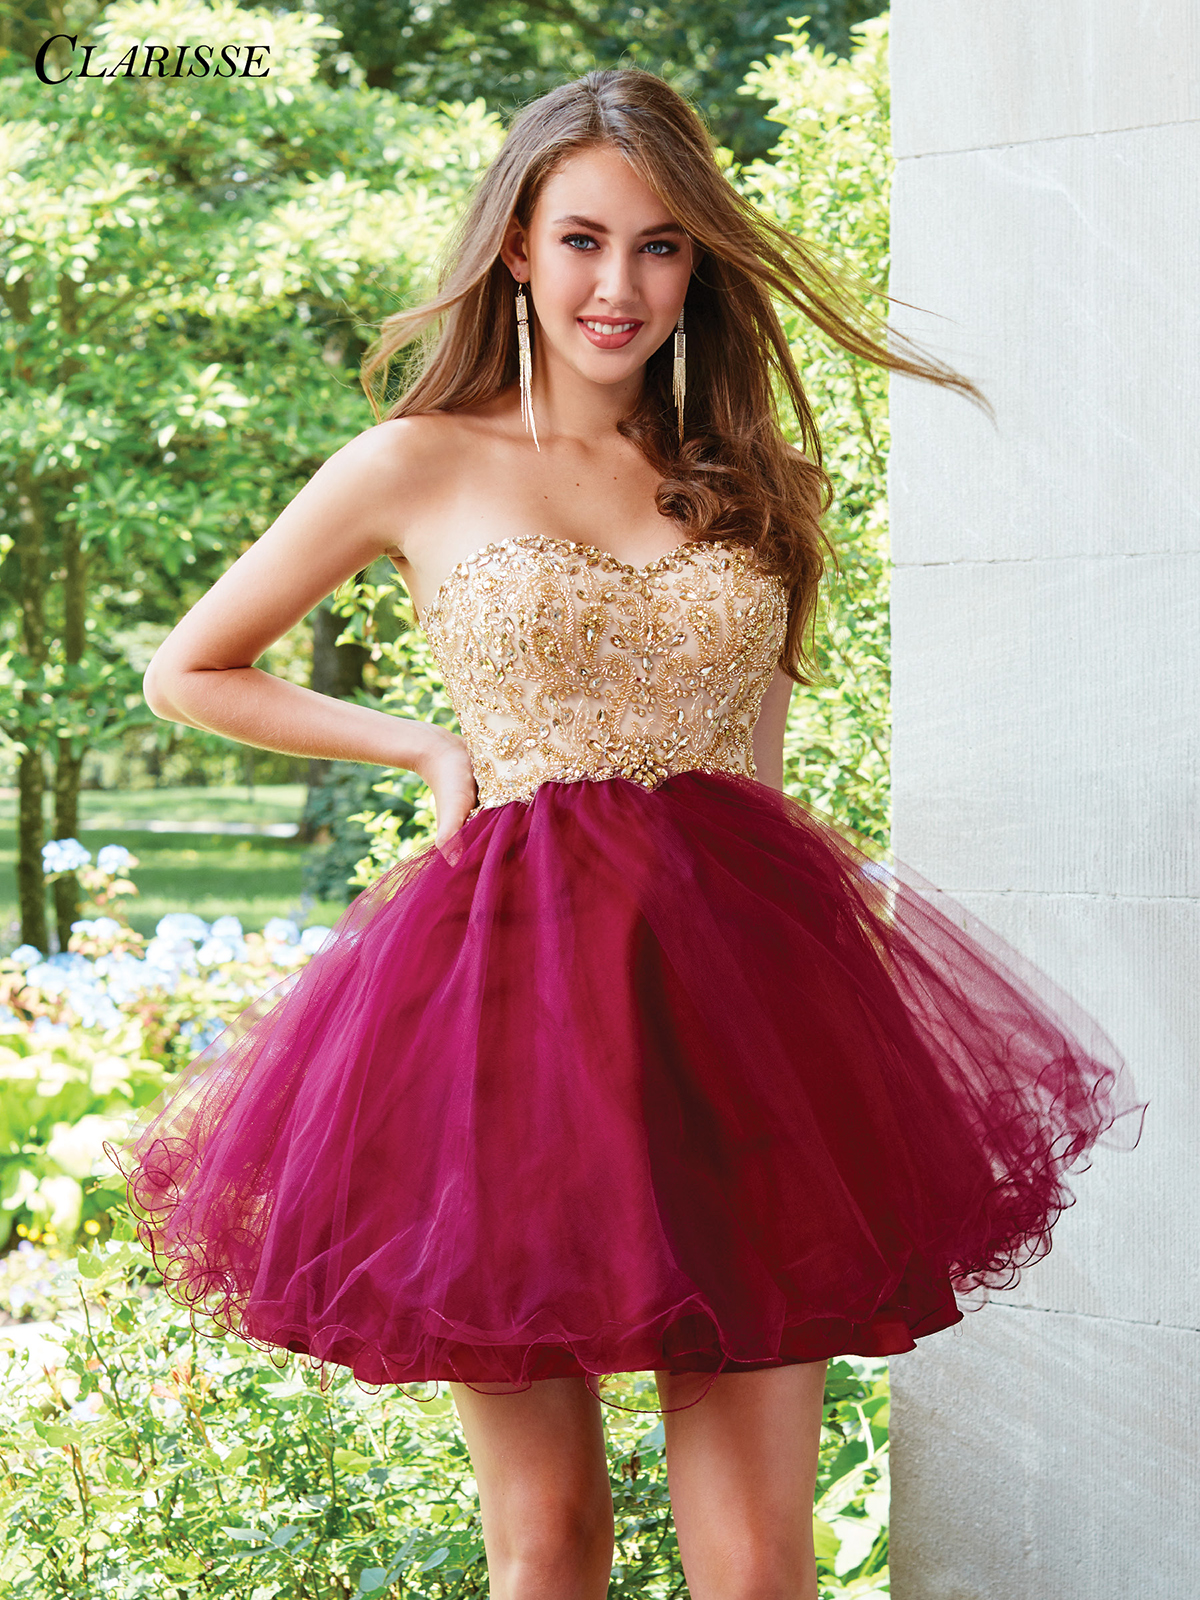 Short Prom Dress burgundy and gold short formal dress 3461 KRBTFCM